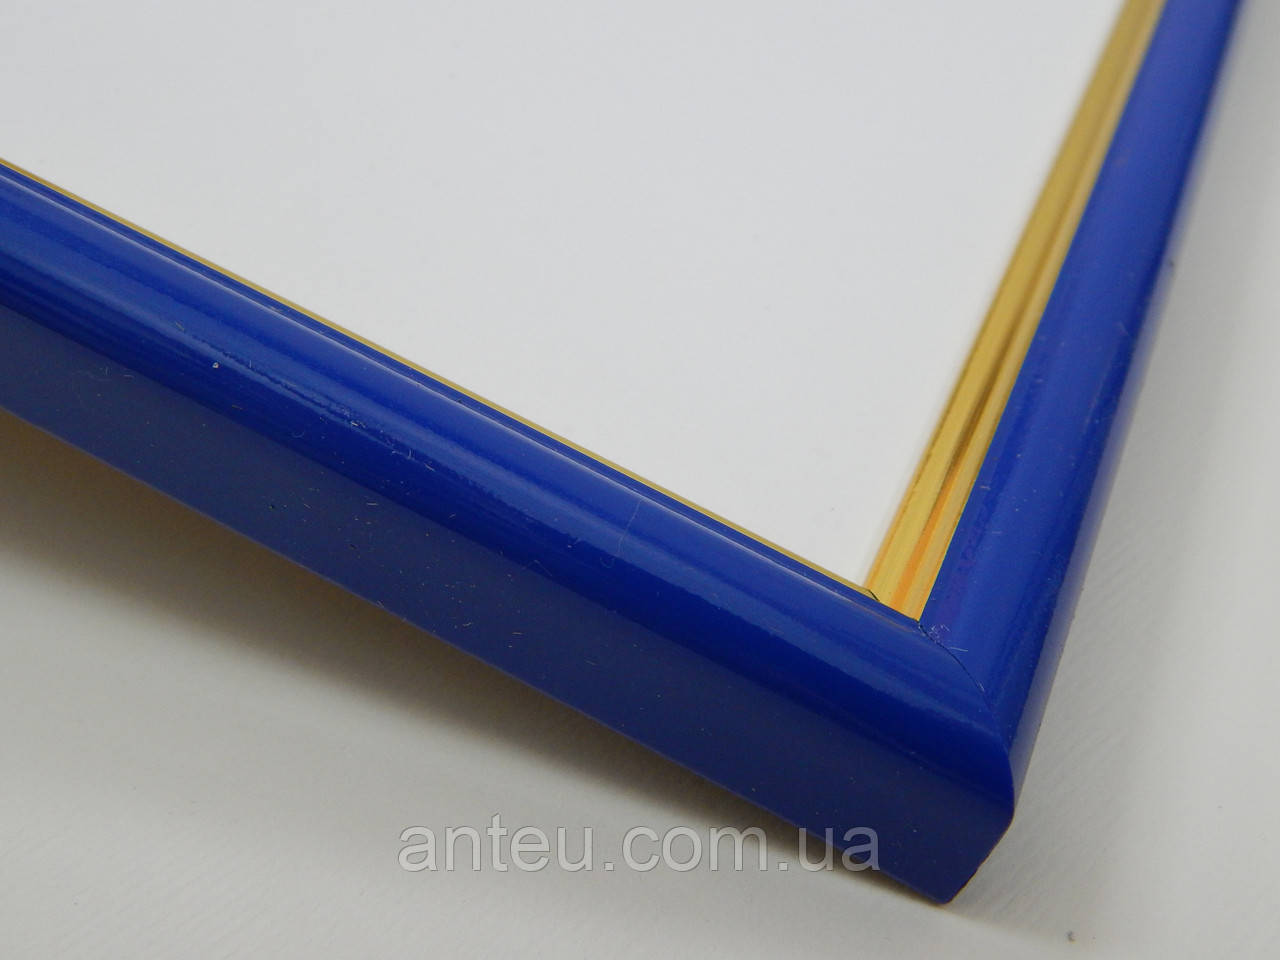 Рамка А4 (210х297).Рамка пластикова 14 мм. Синій із золотою окантовкою